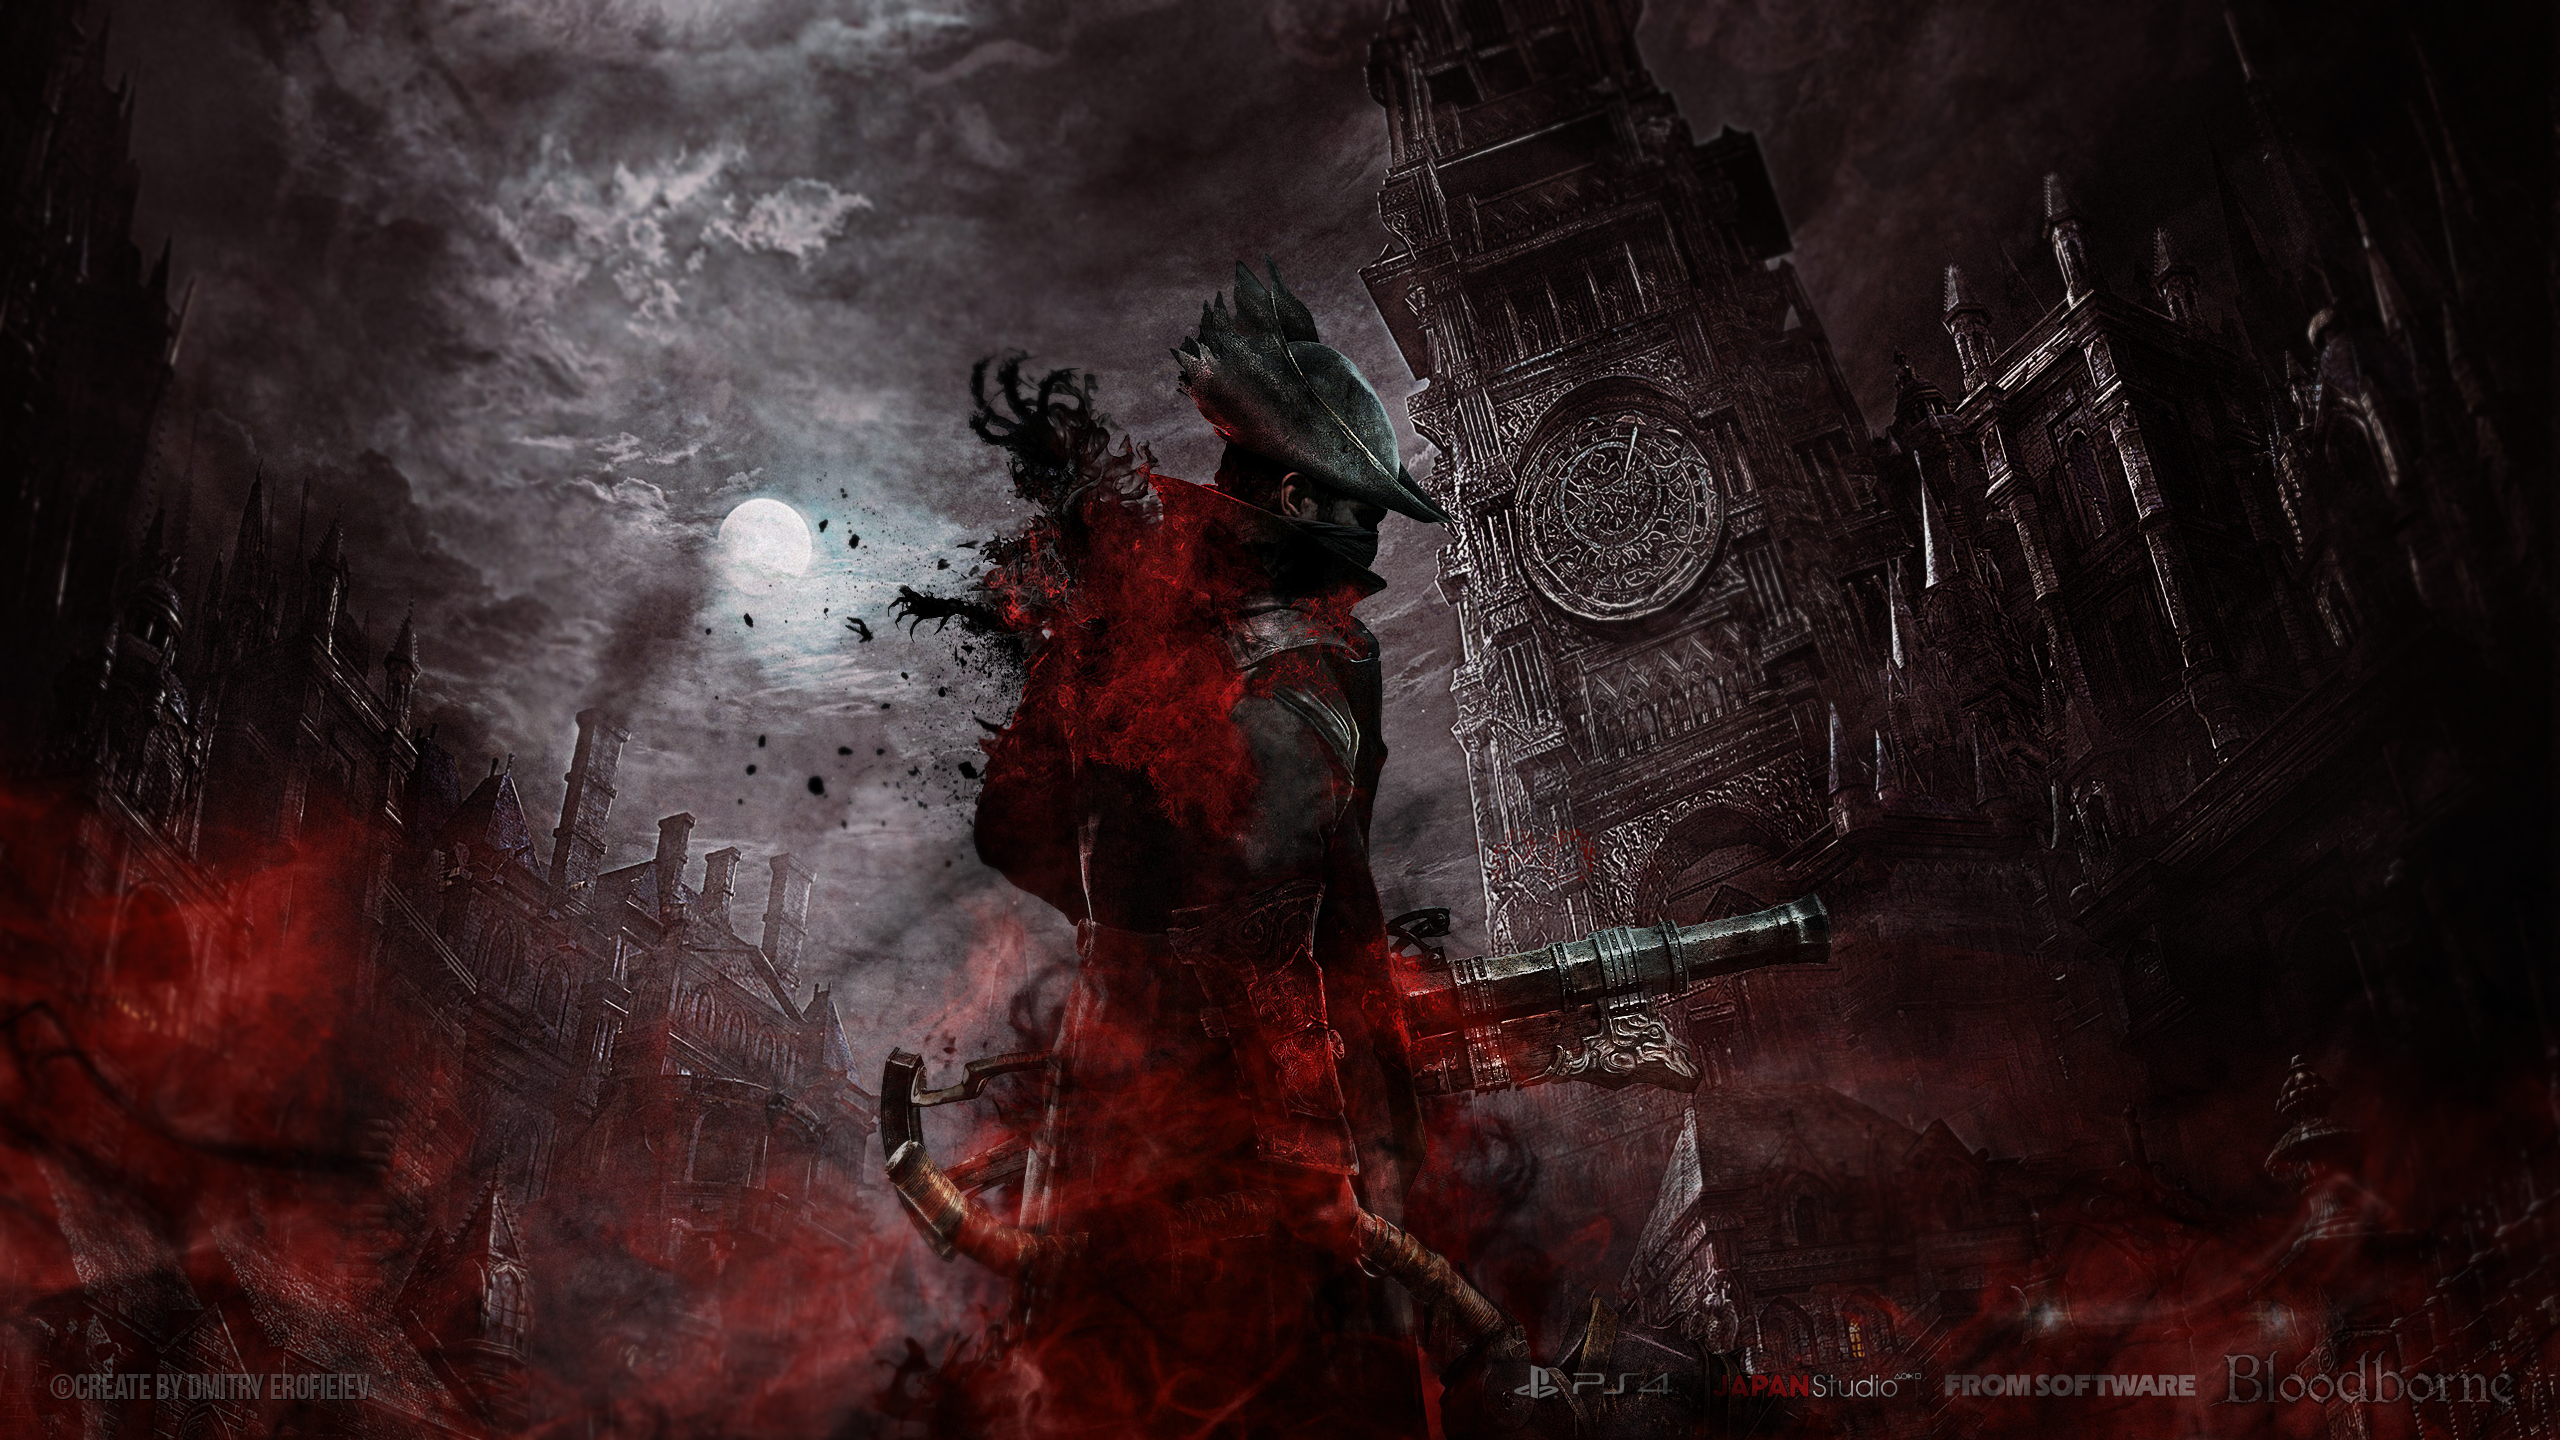 Bloodborne Background. Bloodborne Boss